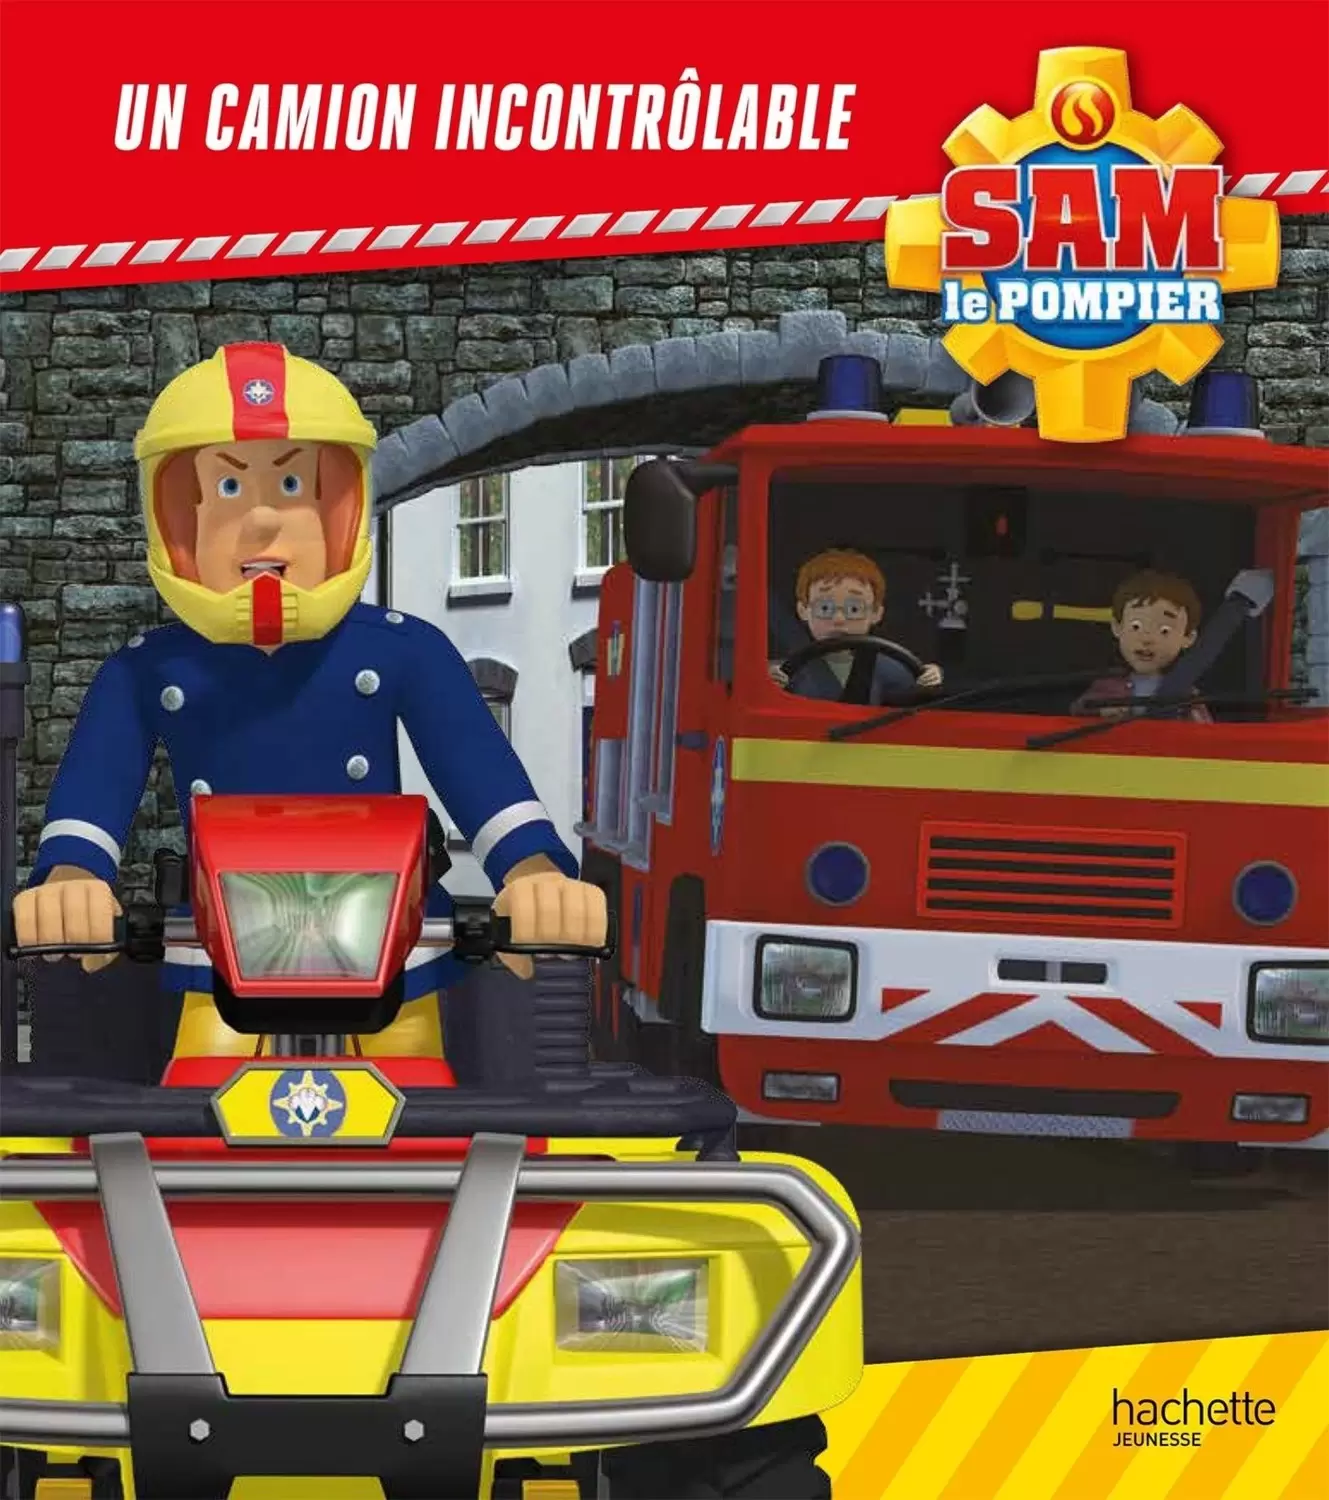 Sam le pompier - Un camion incontrôlable